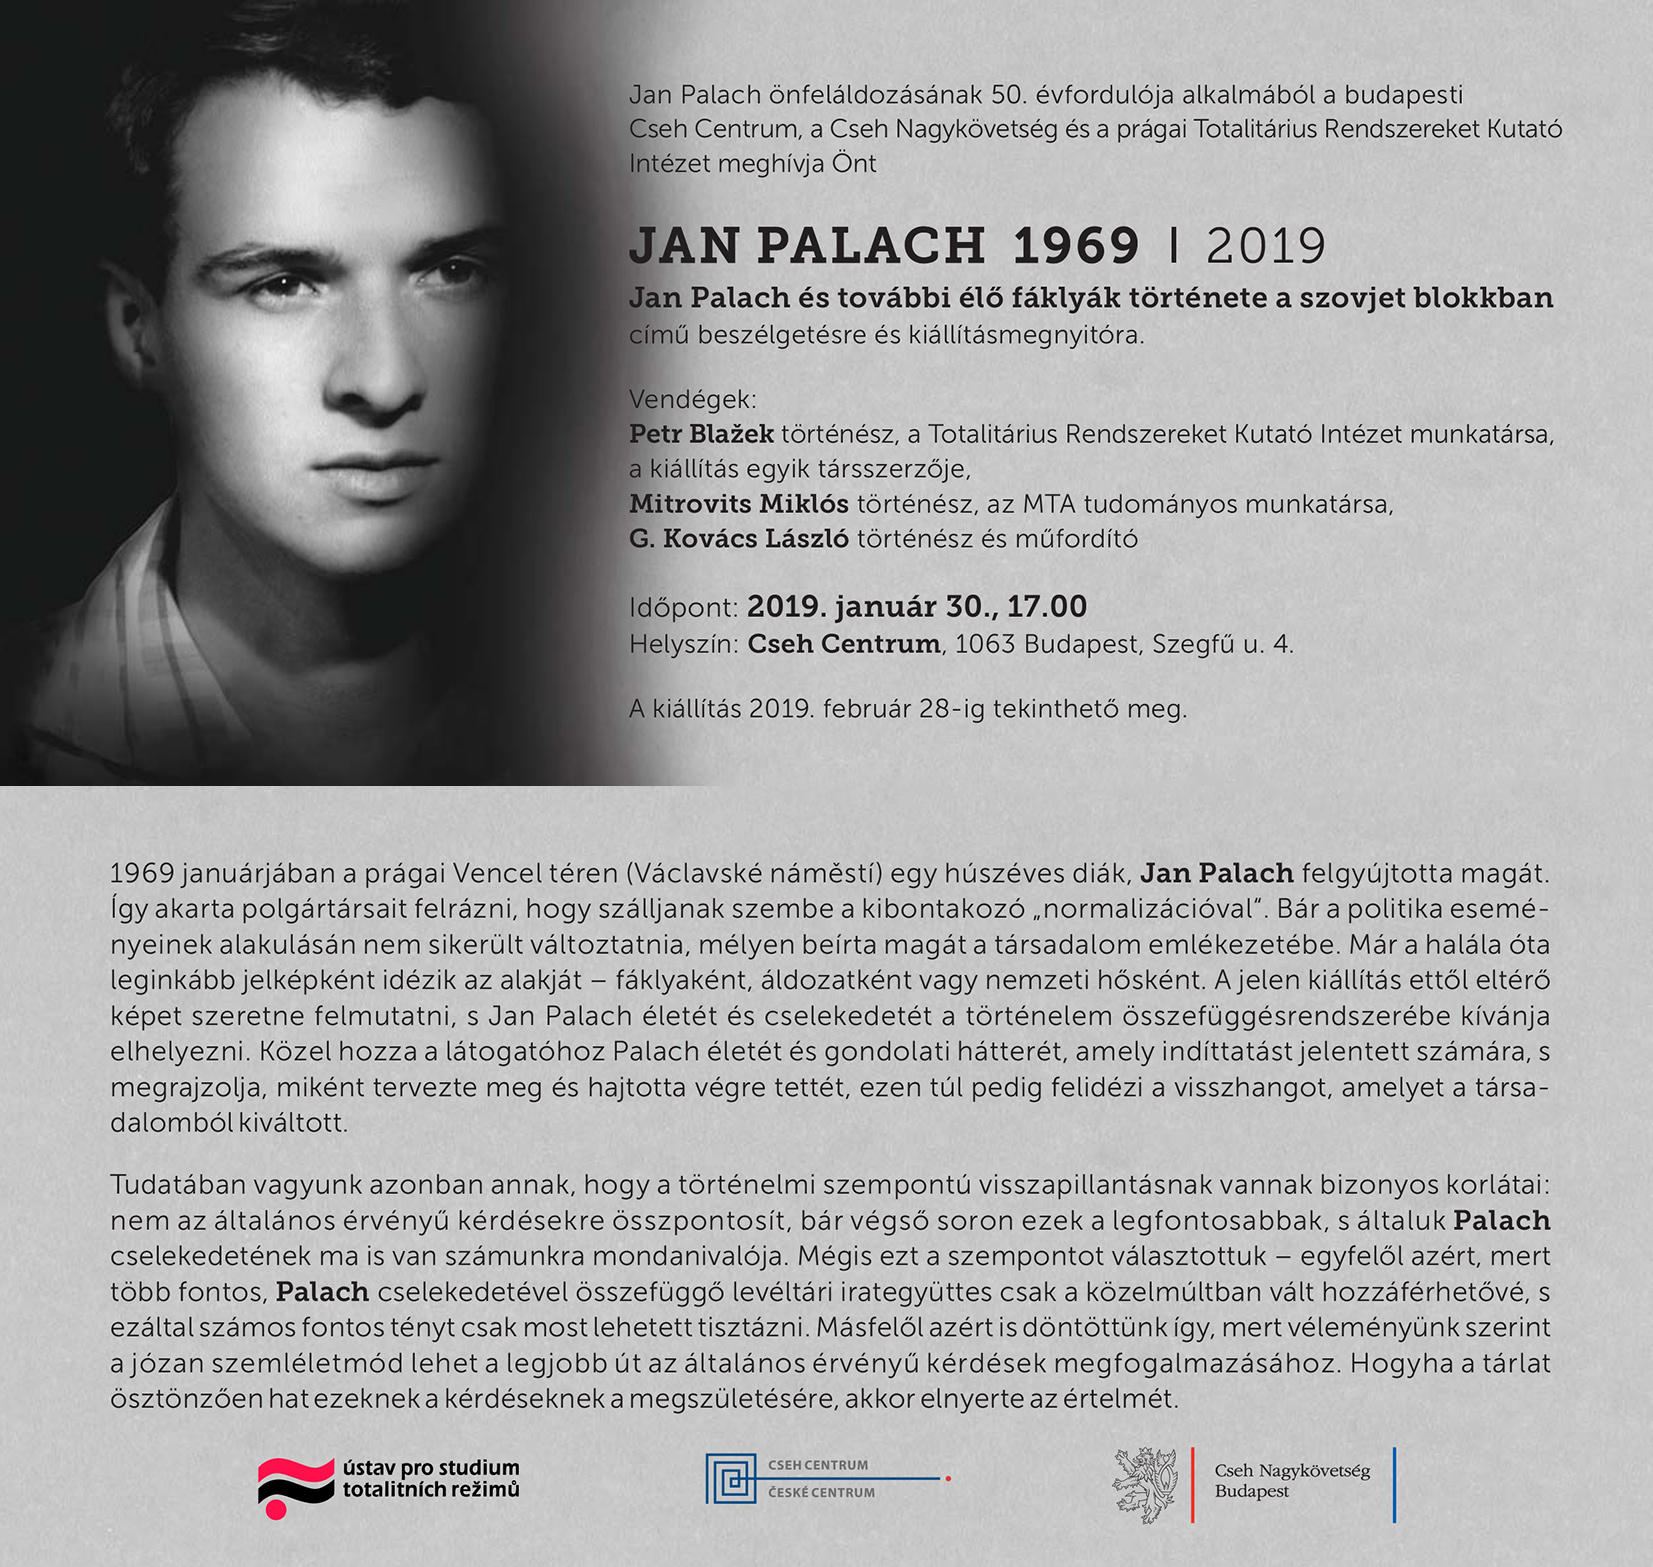 Beszélgetés Jan Palachról a Cseh Centrumban Mitrovits Miklós részvételével